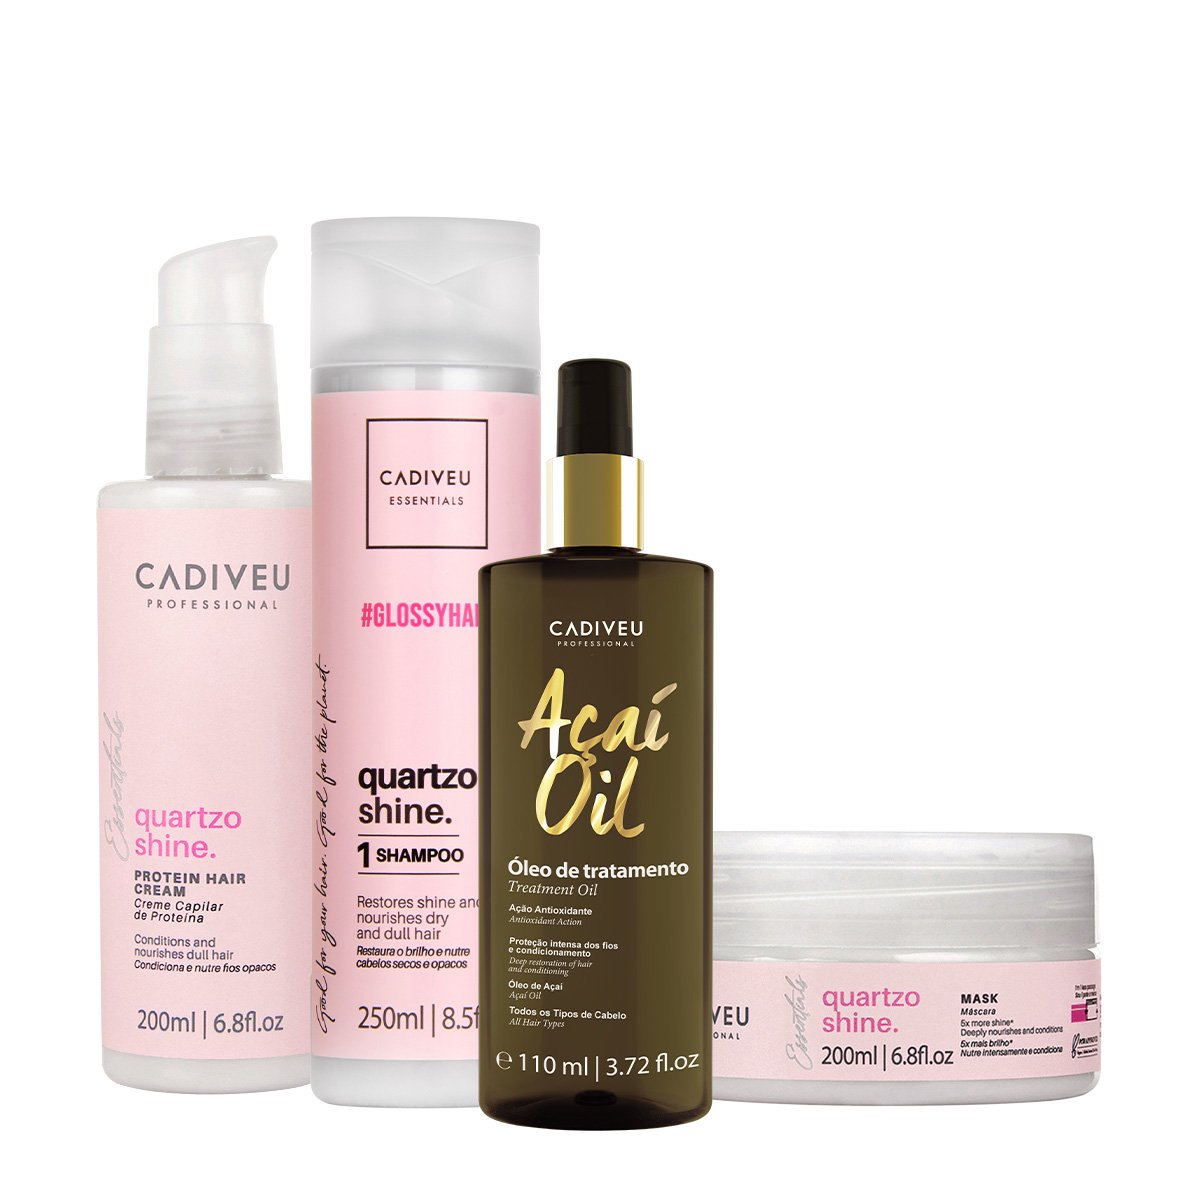 Kit Cadiveu Professional Essentials Quartzo Shine Shampoo Mascara Pre-Shampoo e Acai Oil 110 (4 produtos) ÚNICO 1